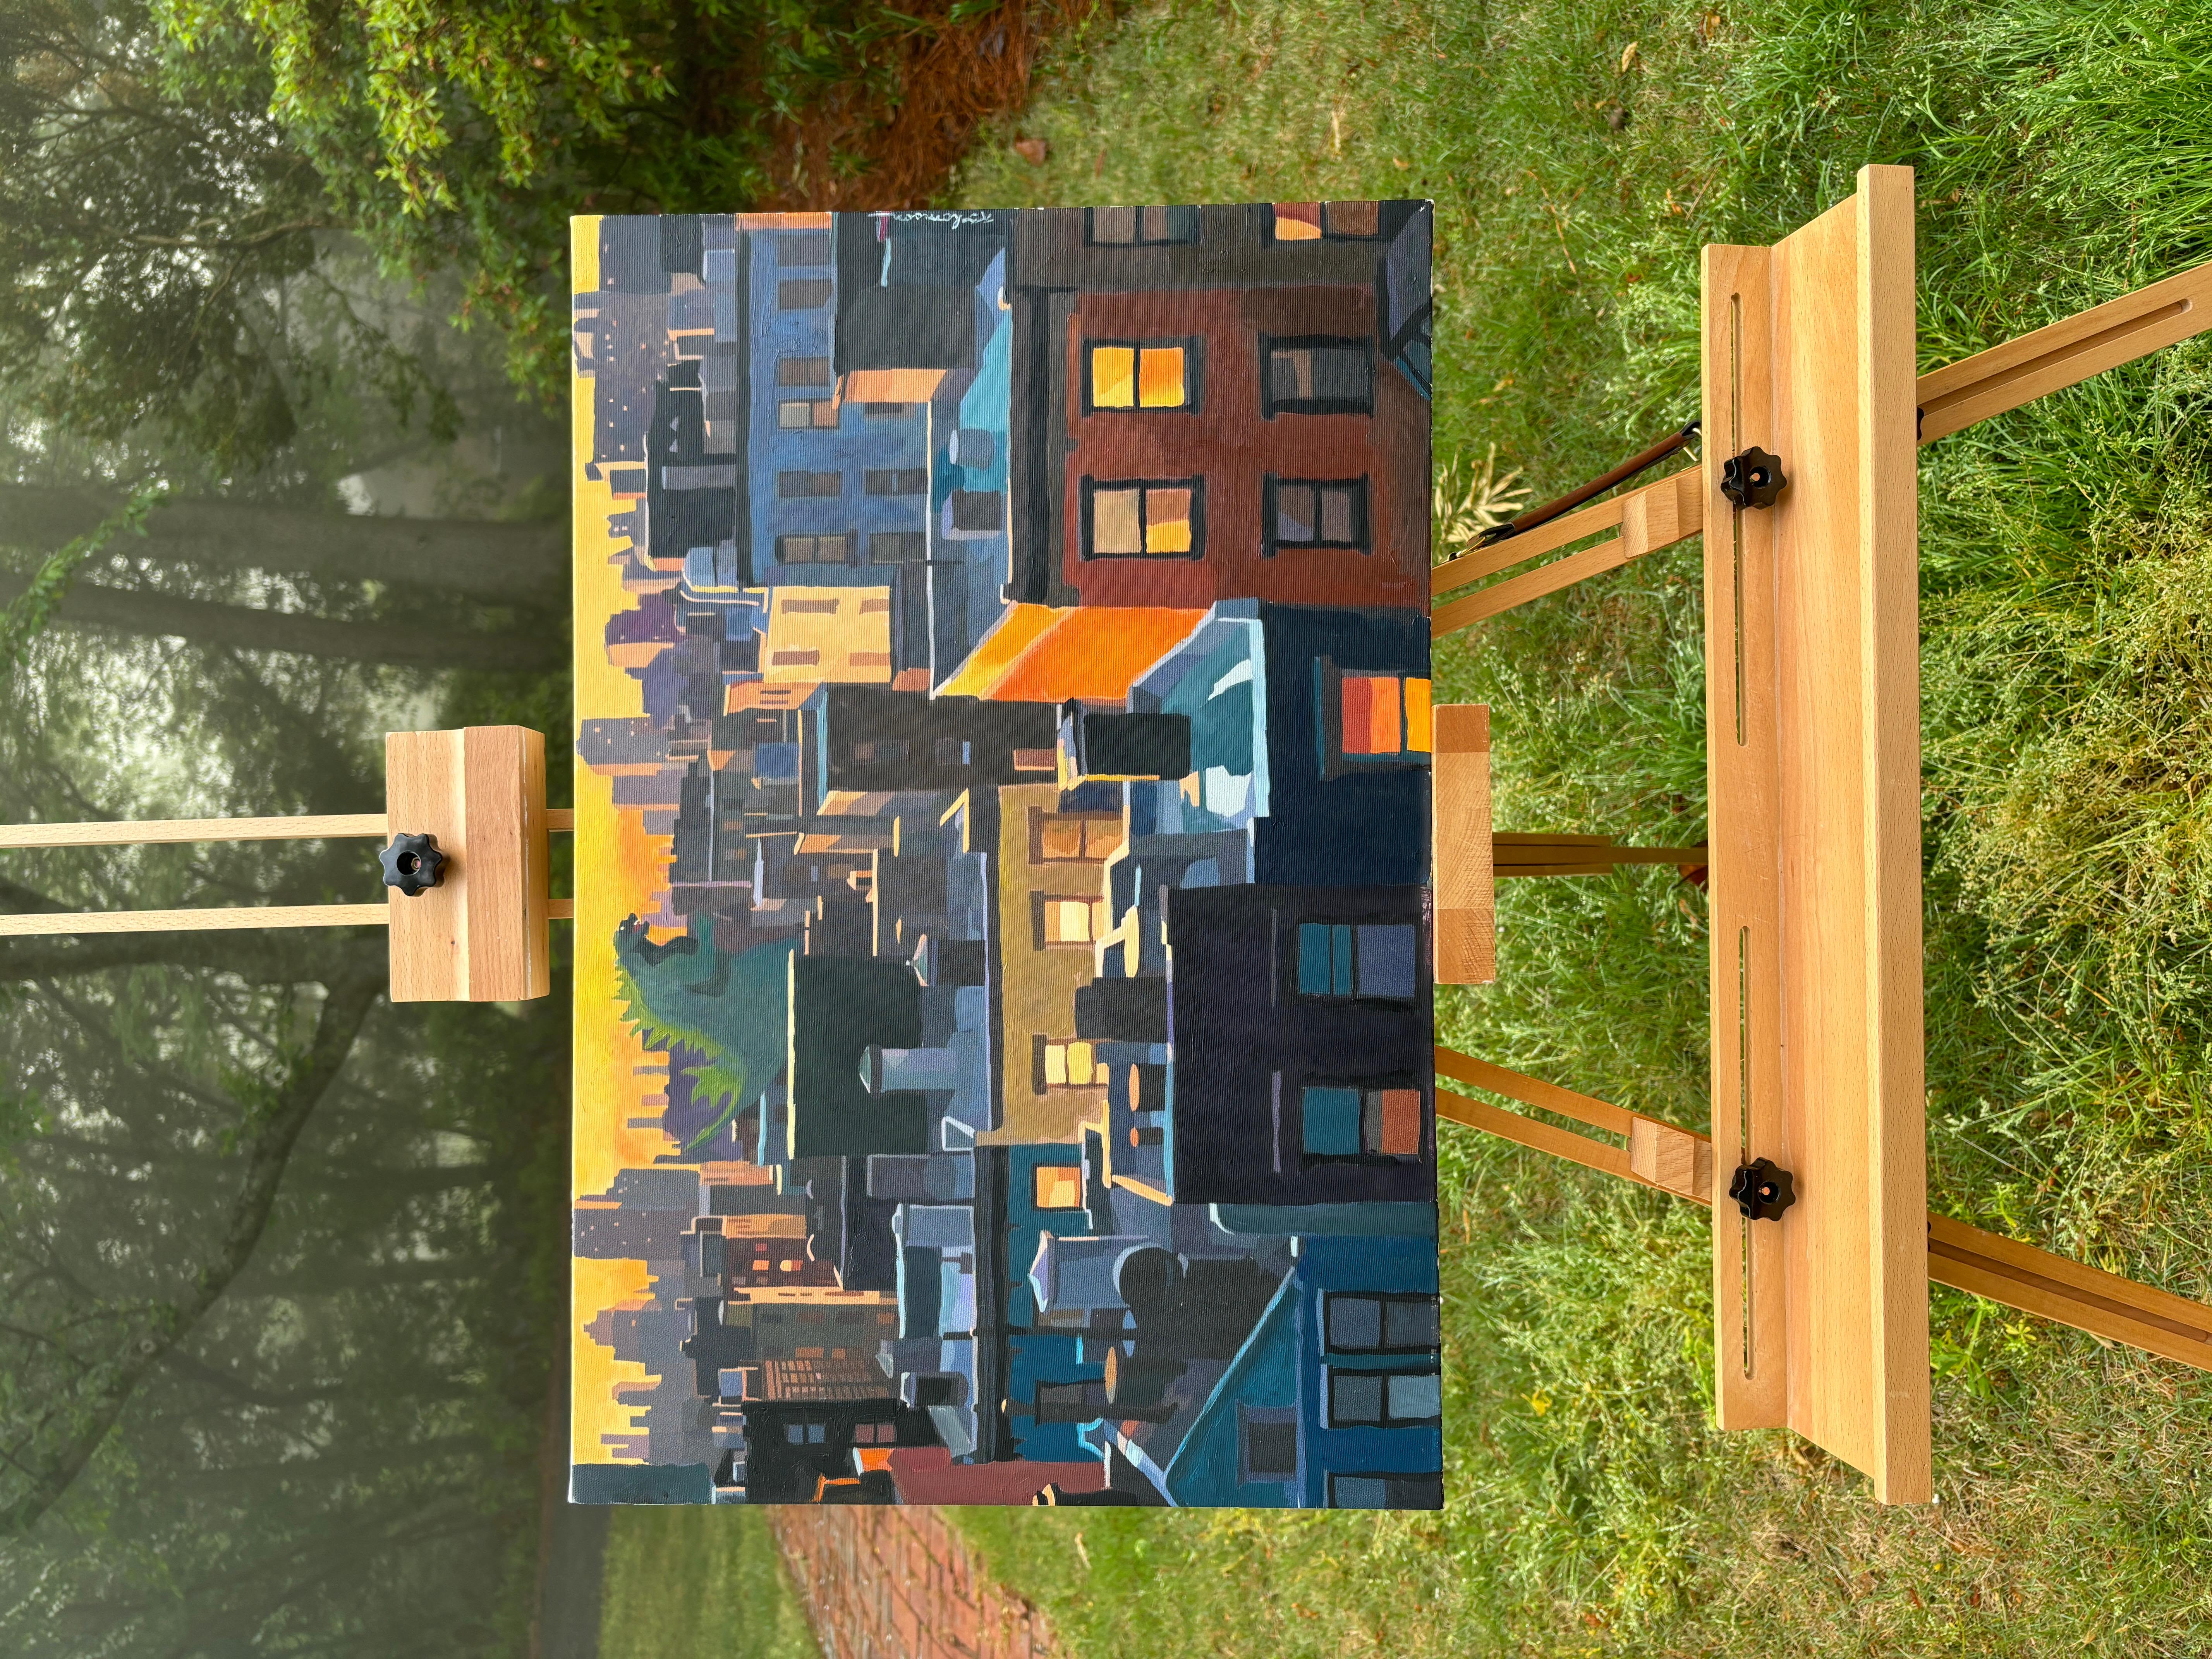 <p>Commentaires de l'artiste<br>La peinture illustre une matinée tranquille à Brooklyn, avec des bâtiments aux angles aigus et des formes en blocs. Il s'agit d'un paysage urbain simple, à l'exception de Godzilla qui erre dans la rue, injectant un